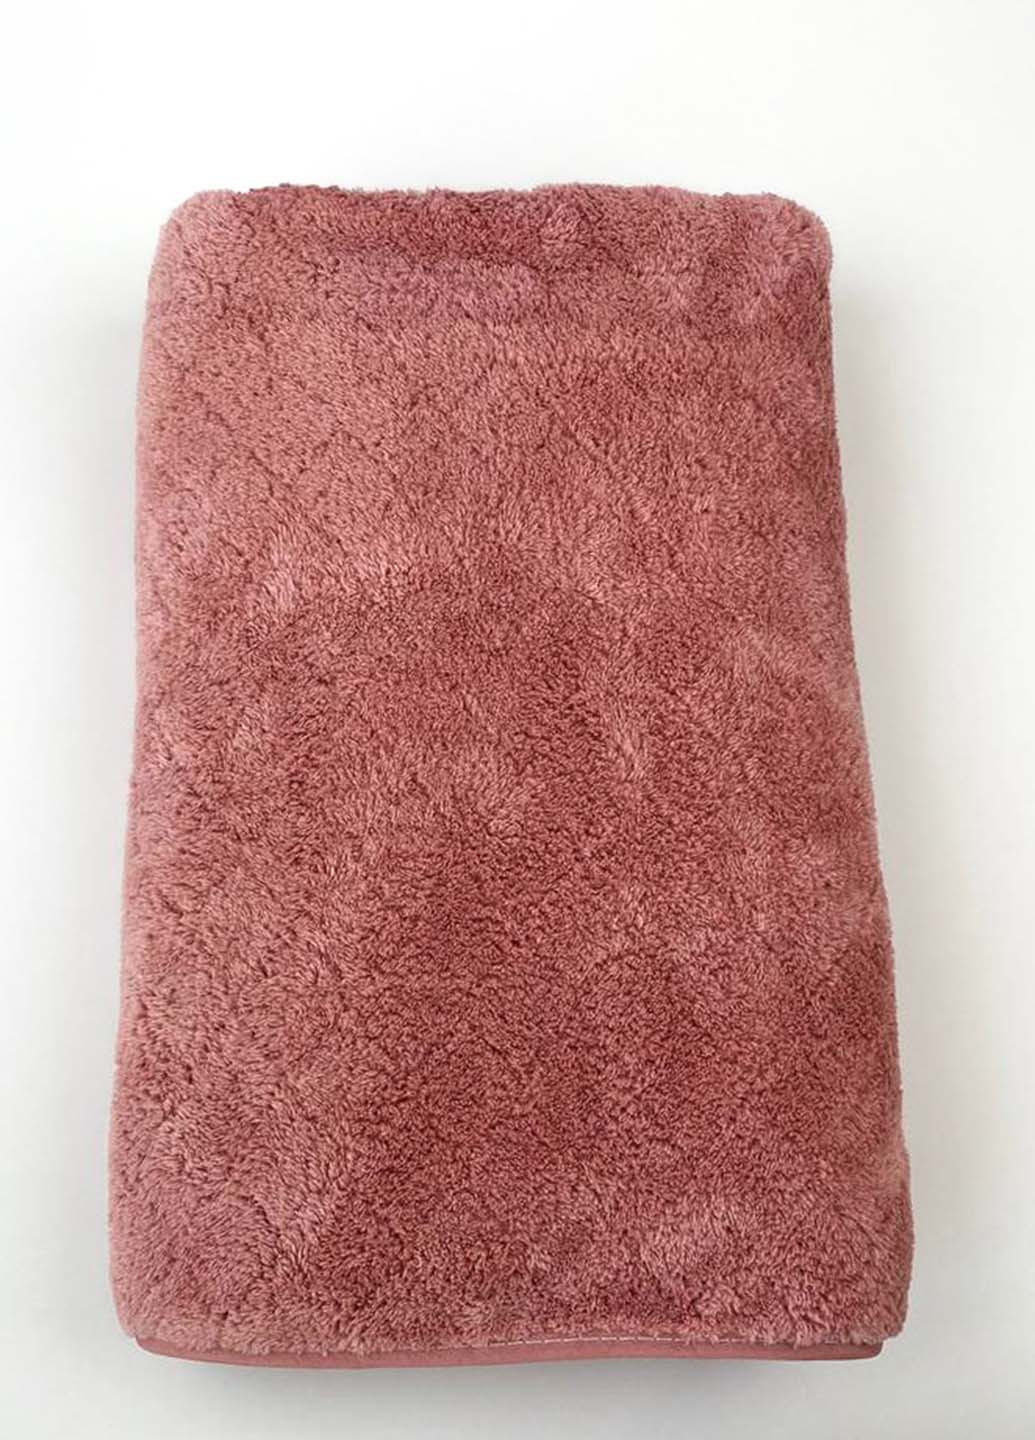 Homedec полотенце банное микрофибра 140х70 см однотонный пудровый производство - Турция